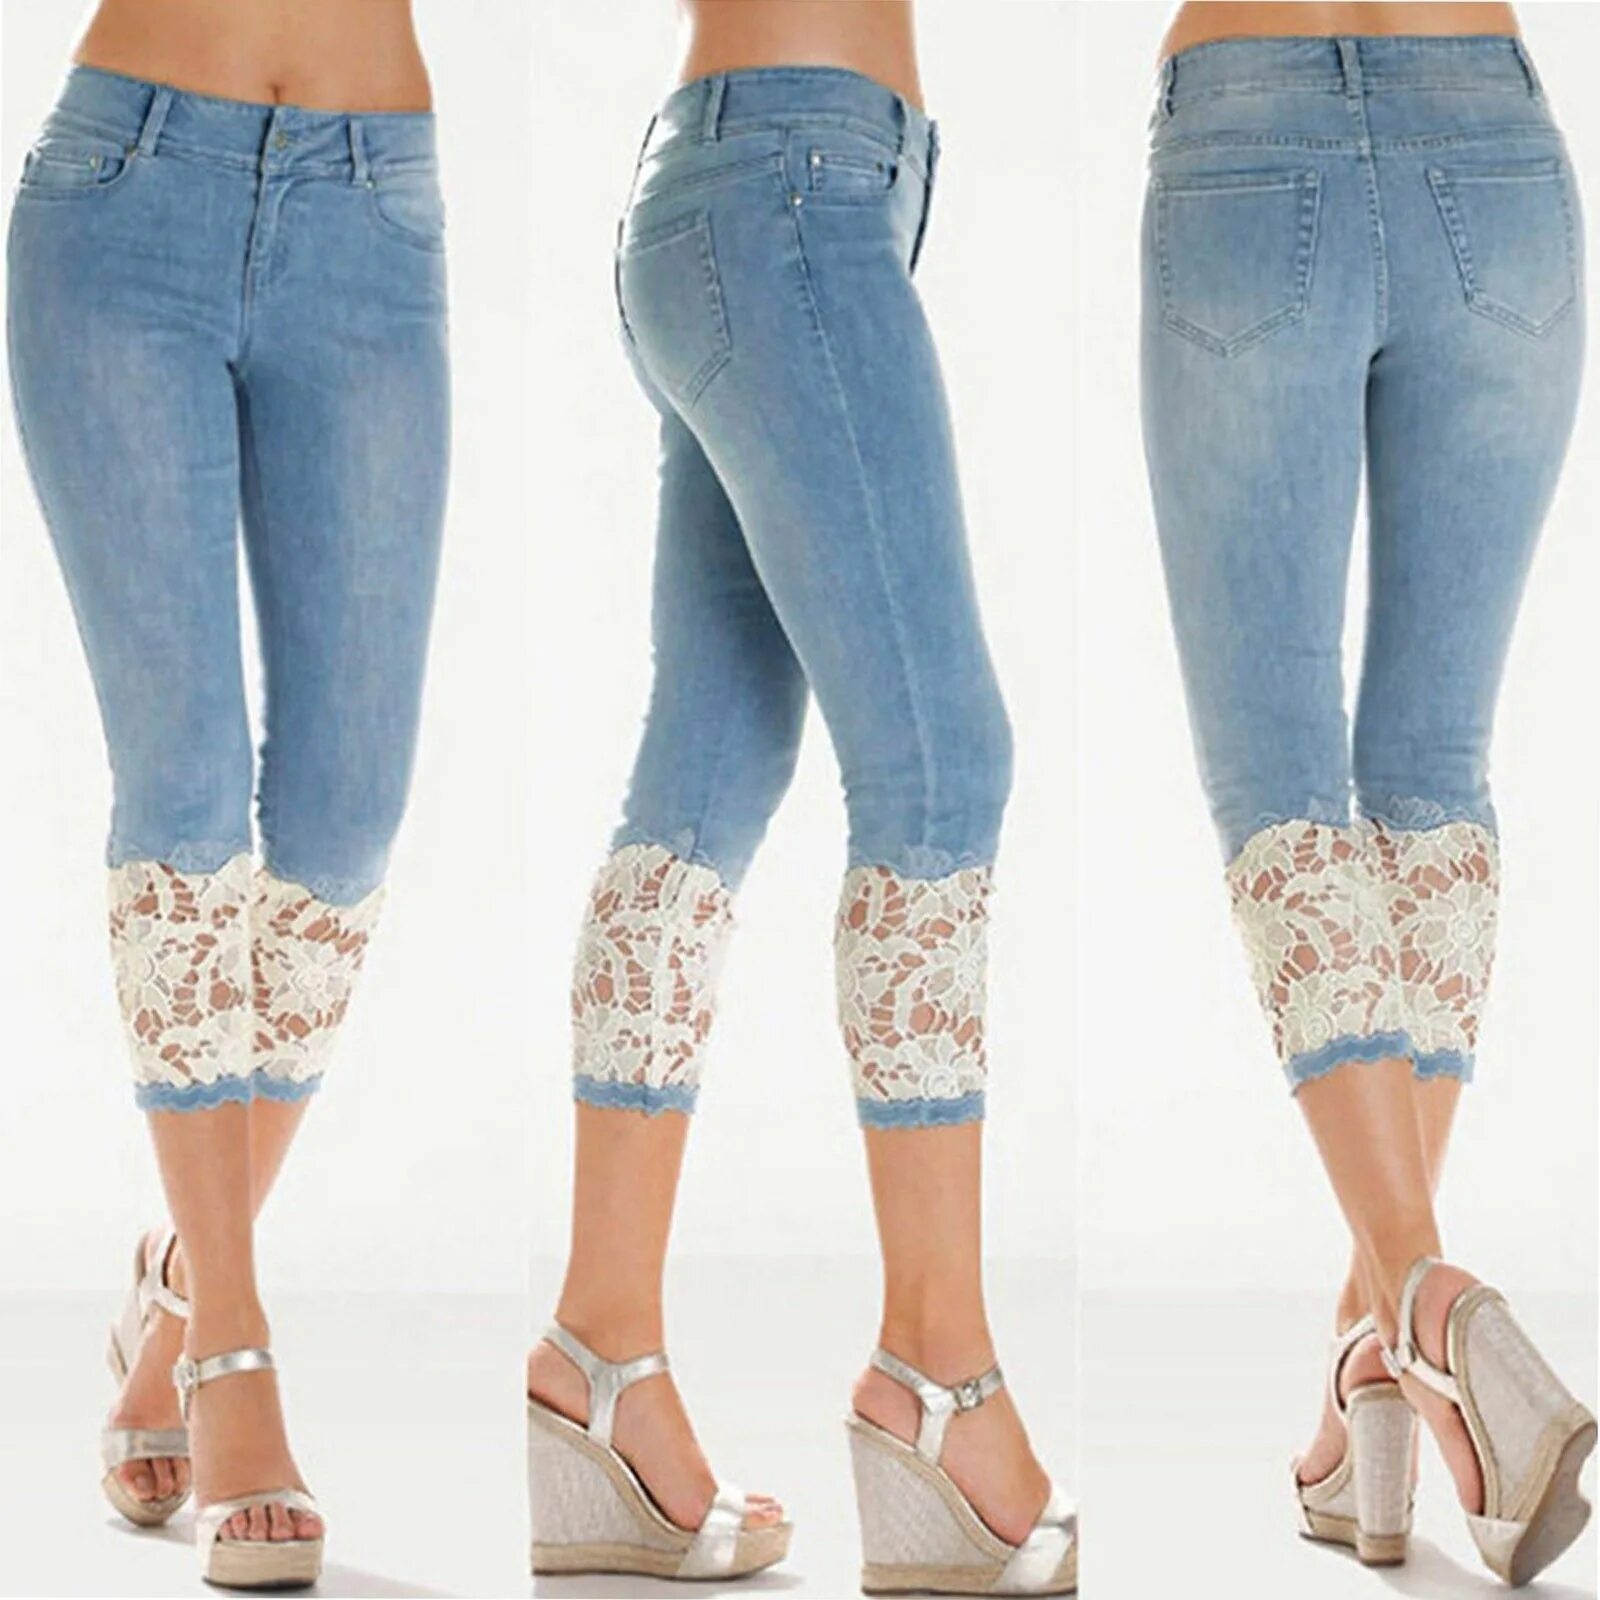 Джинсы тонкие летние женские. Джинсы с кружевом. Летние джинсы. Джинсы летние женские. Красивые джинсы.